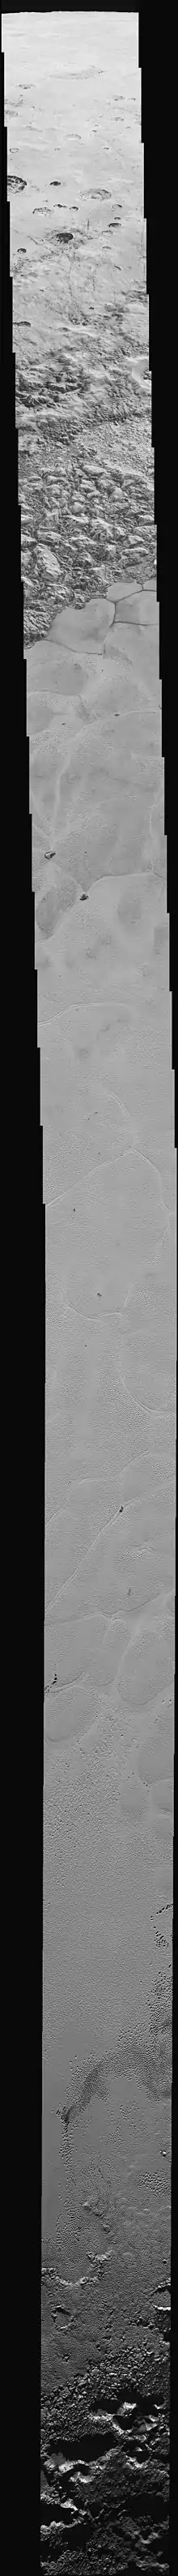 Mosaïque d'images montrant des terrains variés à la surface de Pluton.